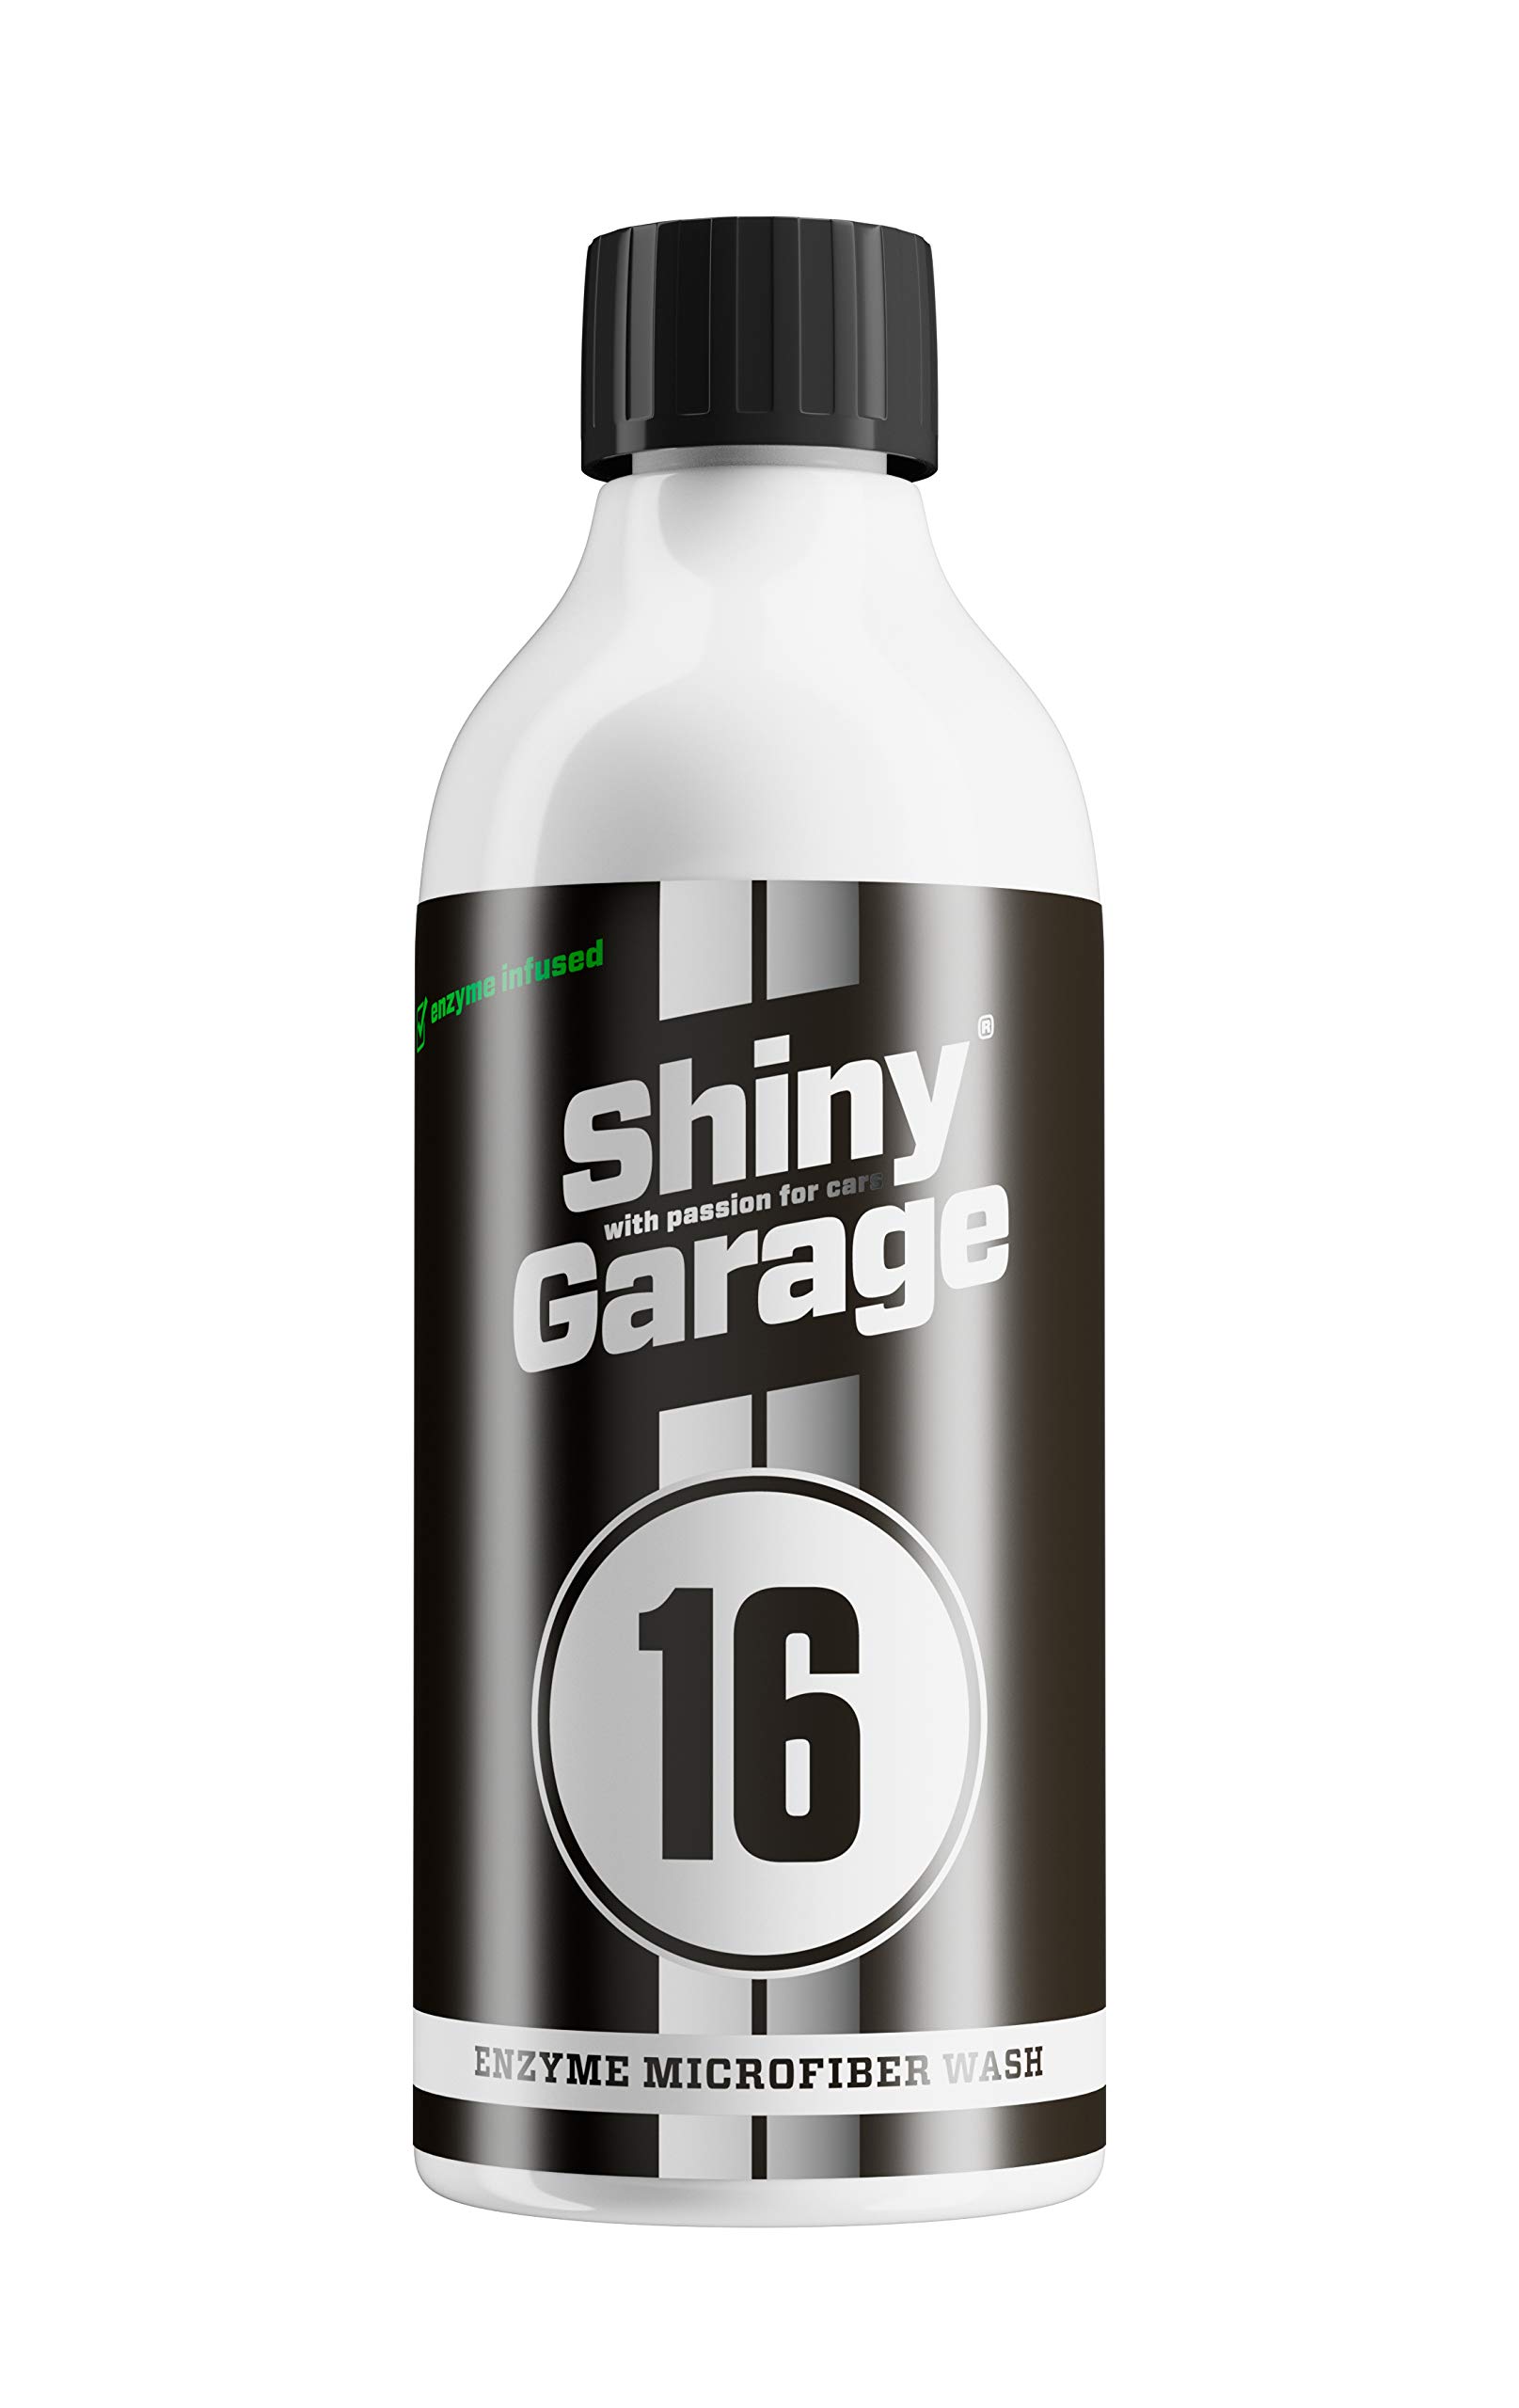 Shiny Garage Mikrofaserwaschmittel Enzyme Microfiber Wash von Shiny Garage